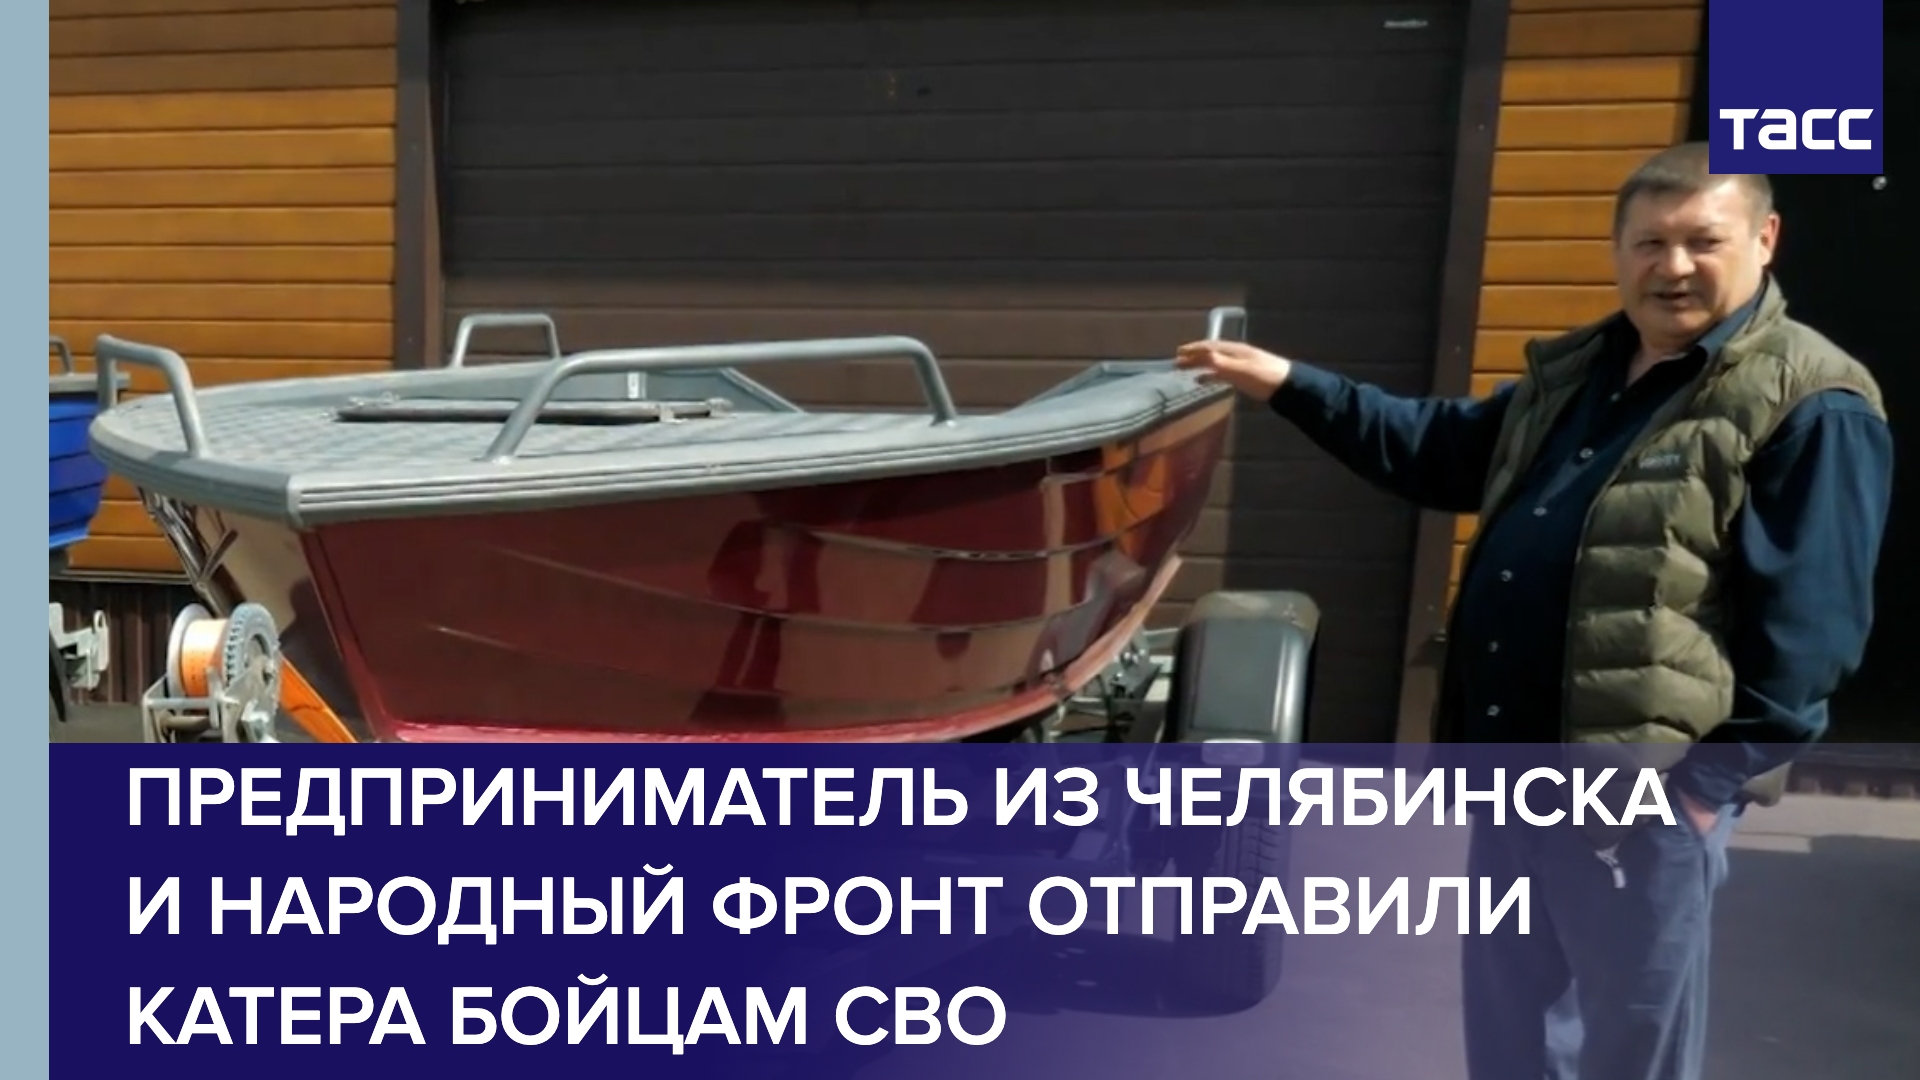 Предприниматель из Челябинска и Народный фронт отправили катера бойцам СВО